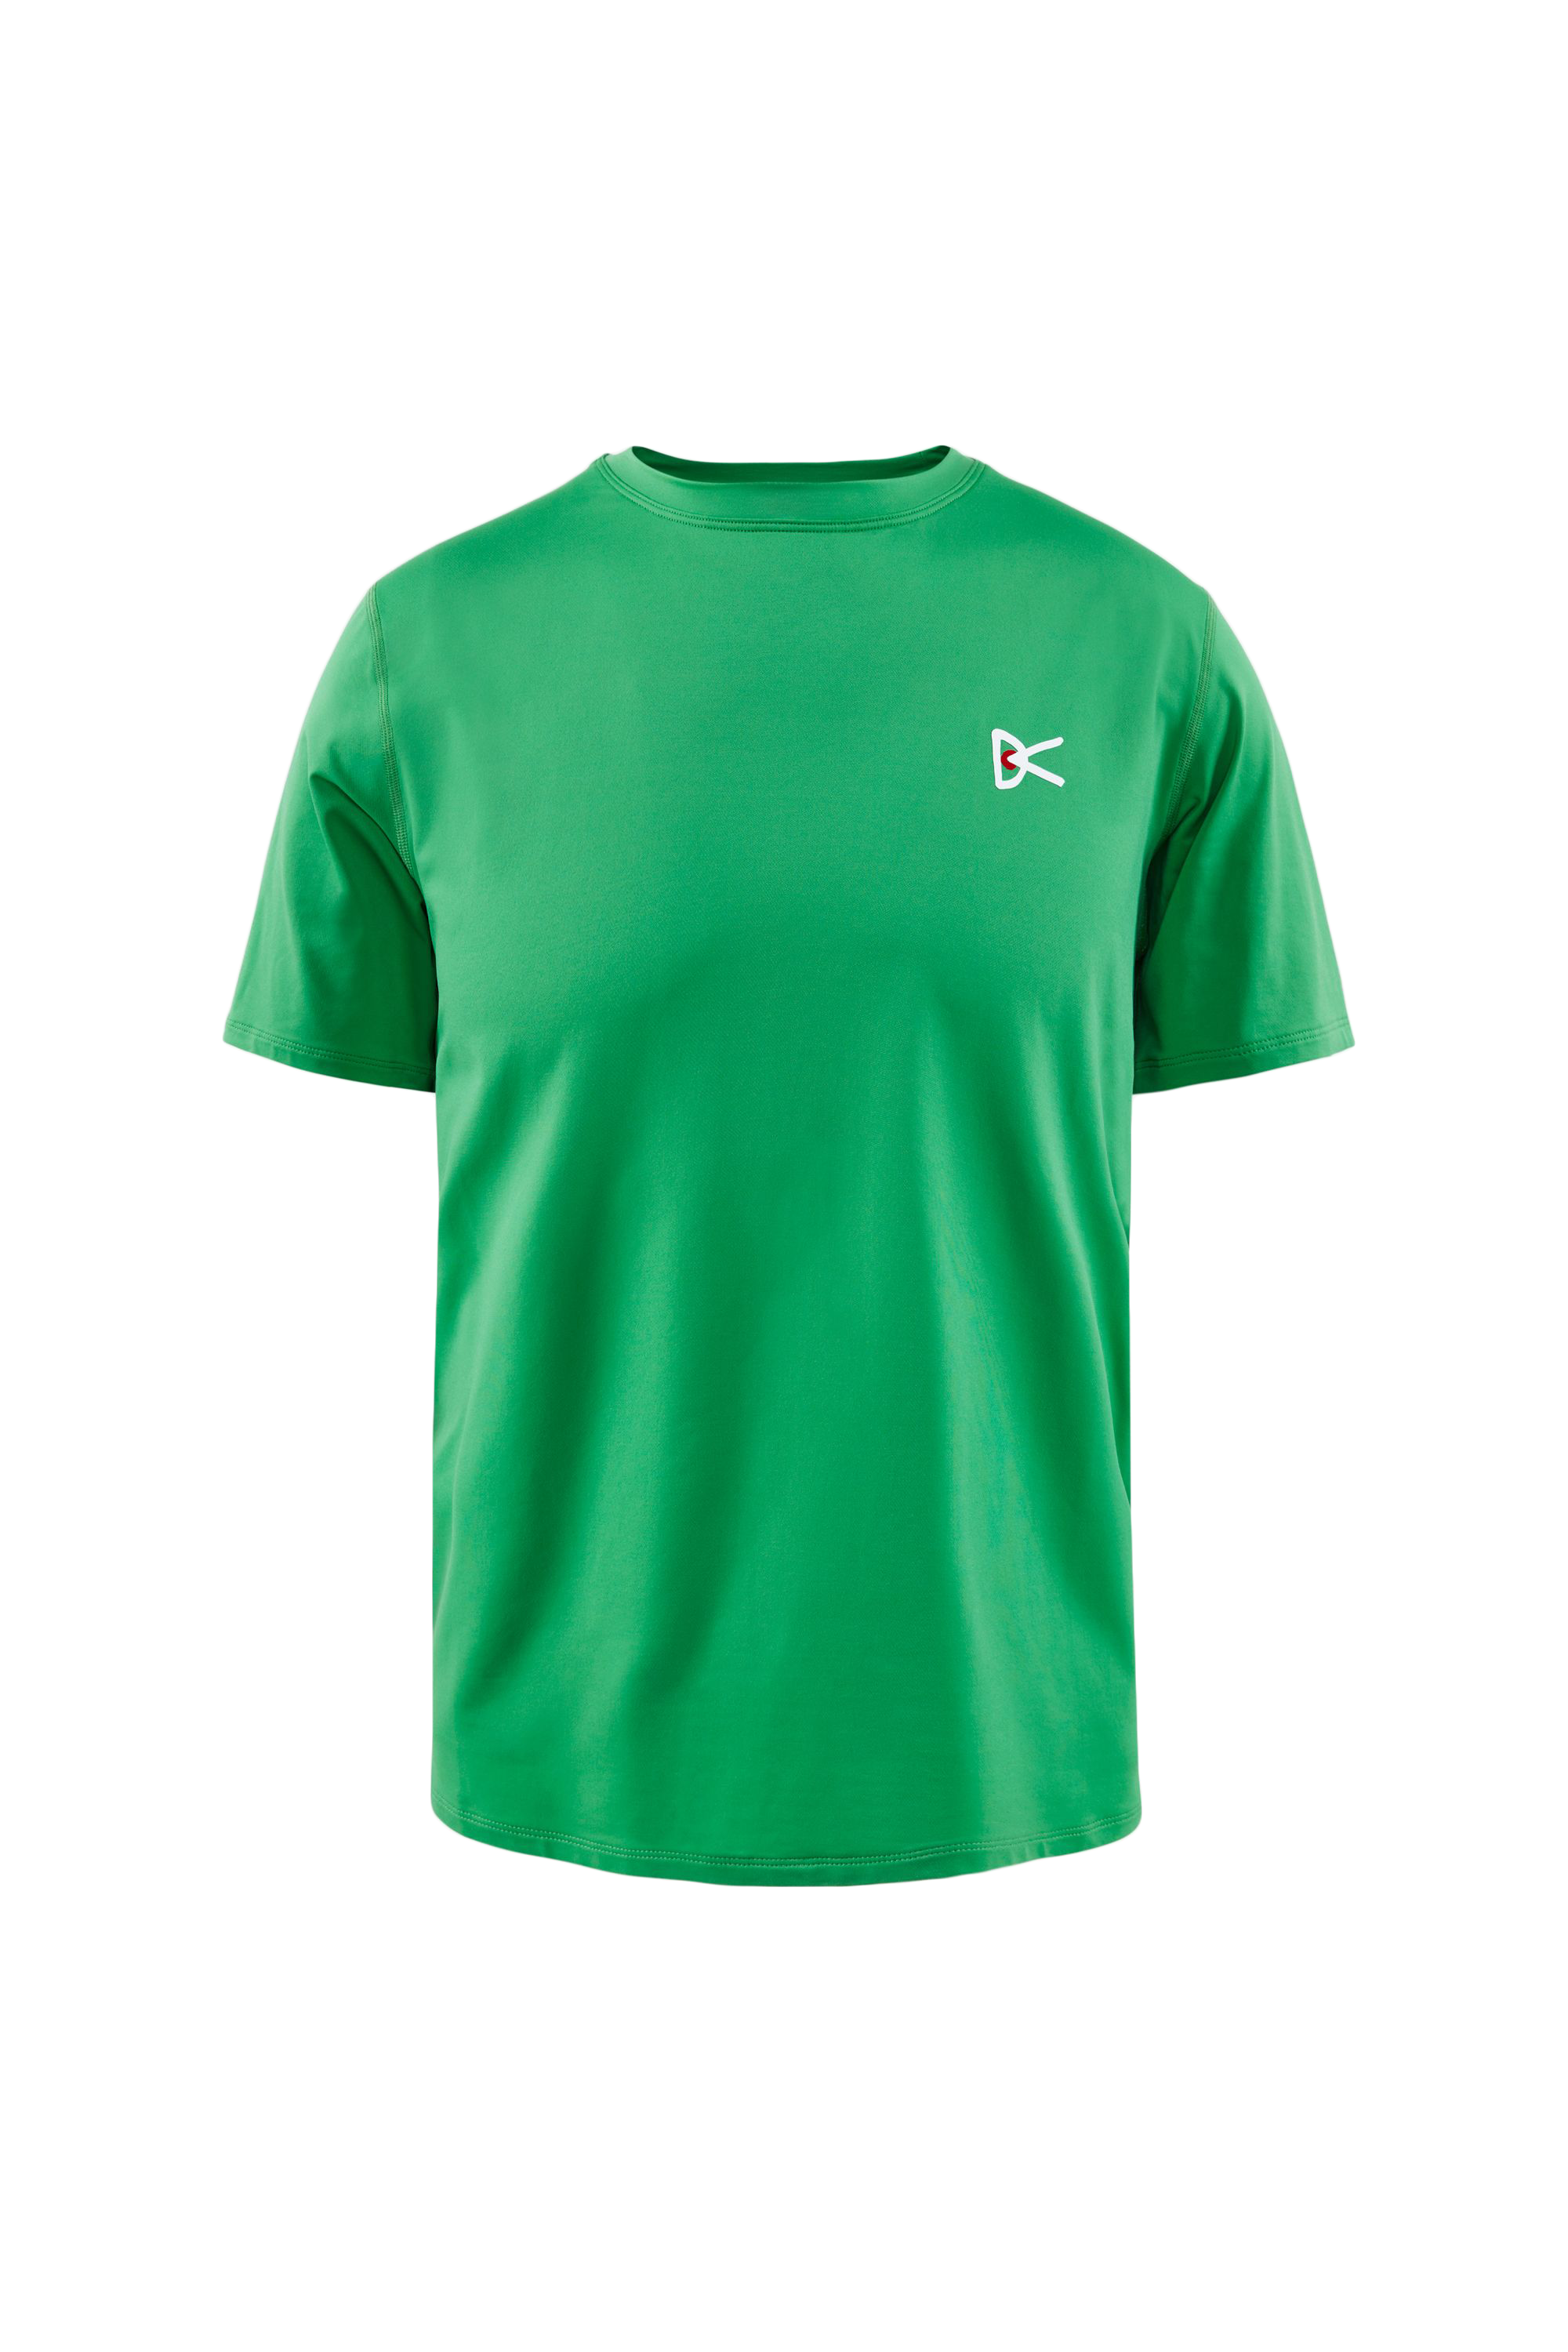 Deva Short Sleeve T-Shirt, Algae